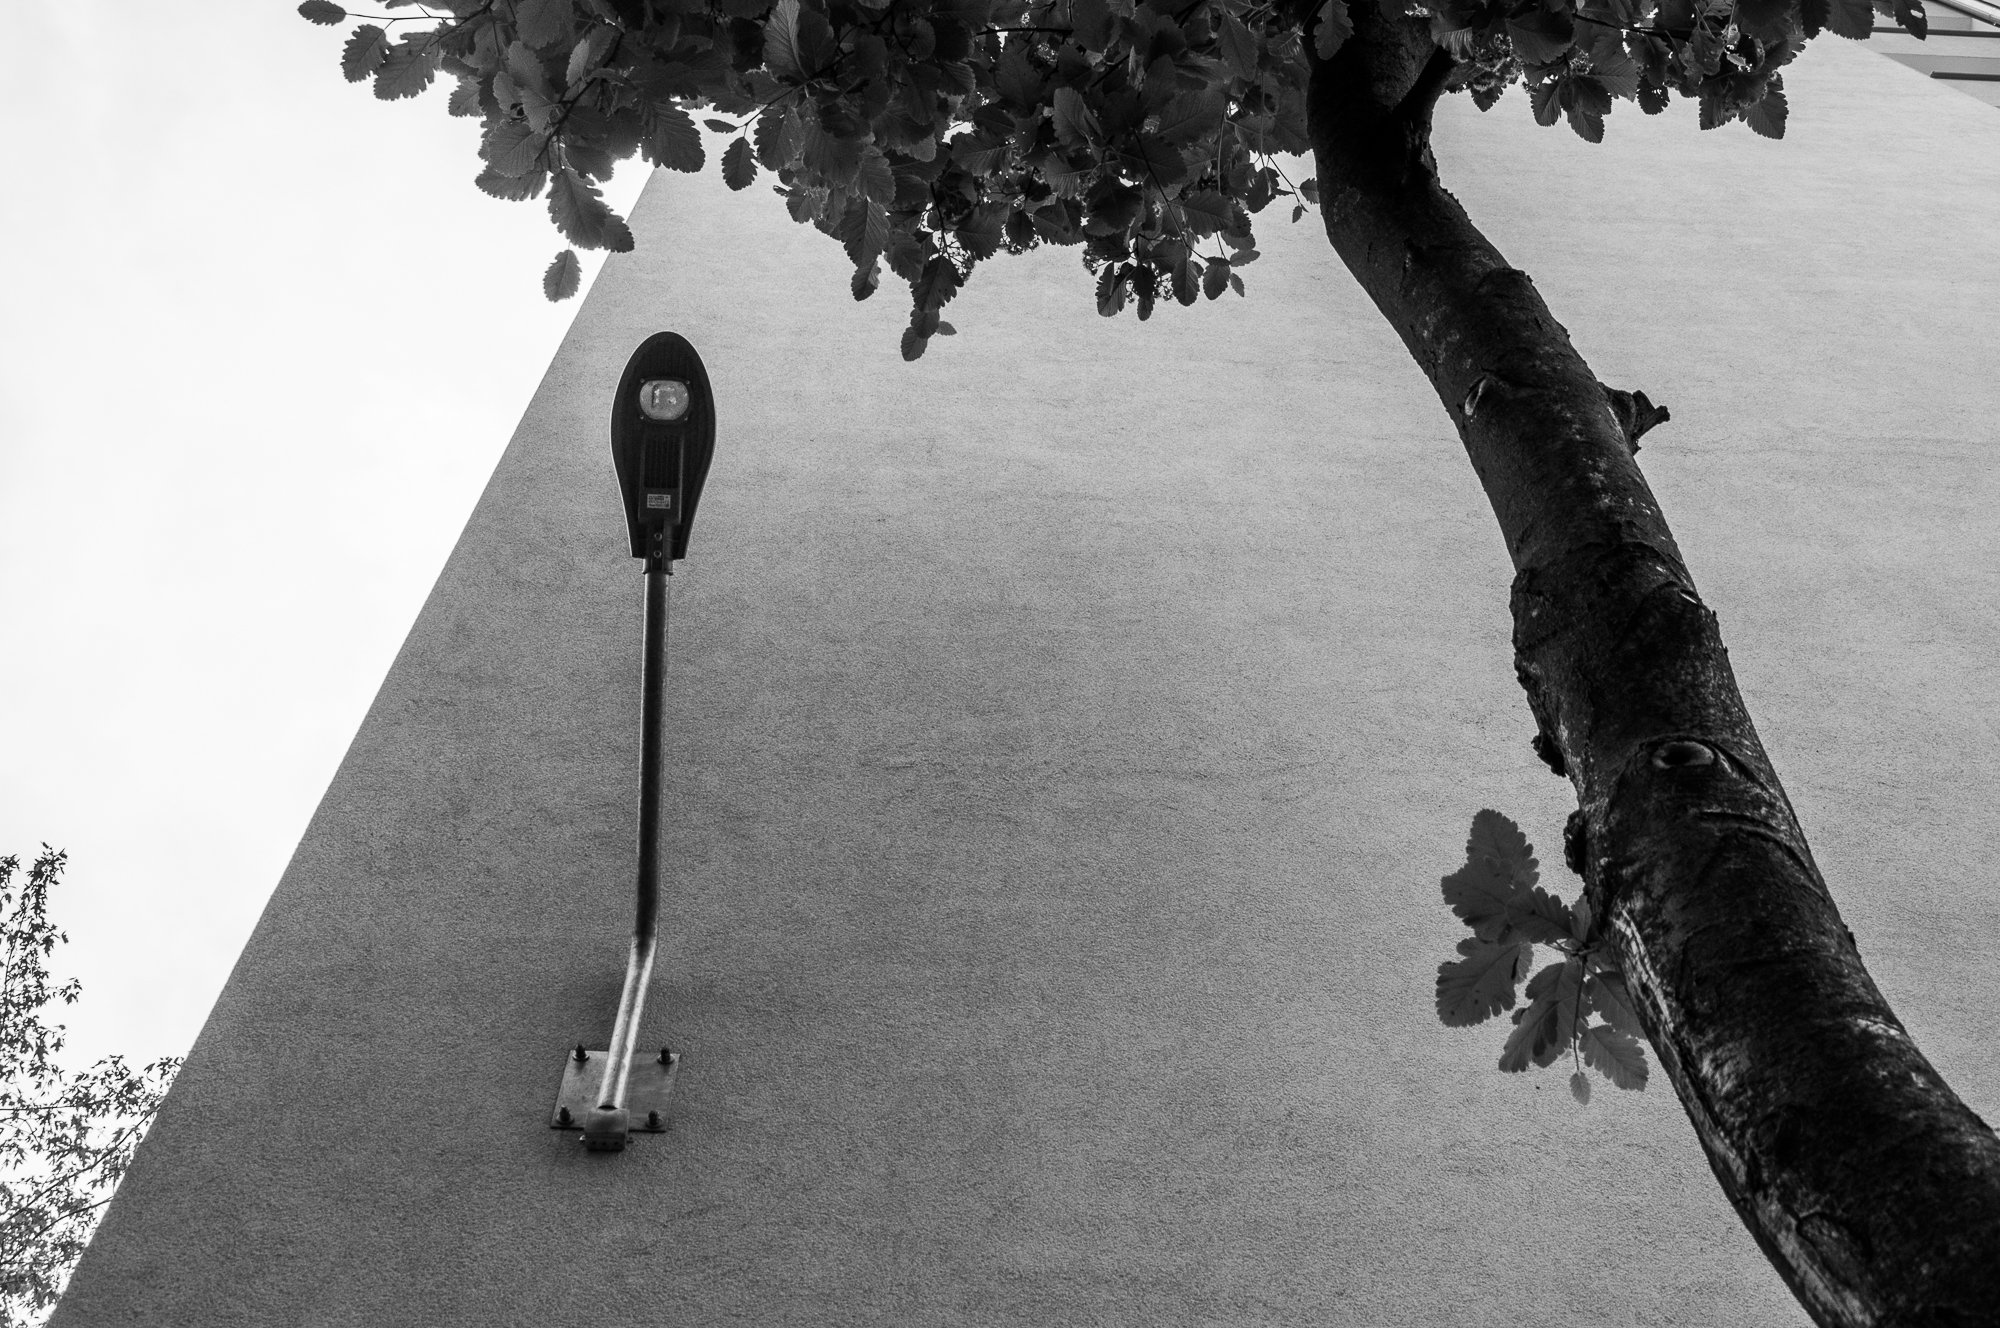 Adam Mazek Photography Warsaw (Warszawa) 2019. Post: "Thunderstruck." Minimalism. Street lamp and the tree.